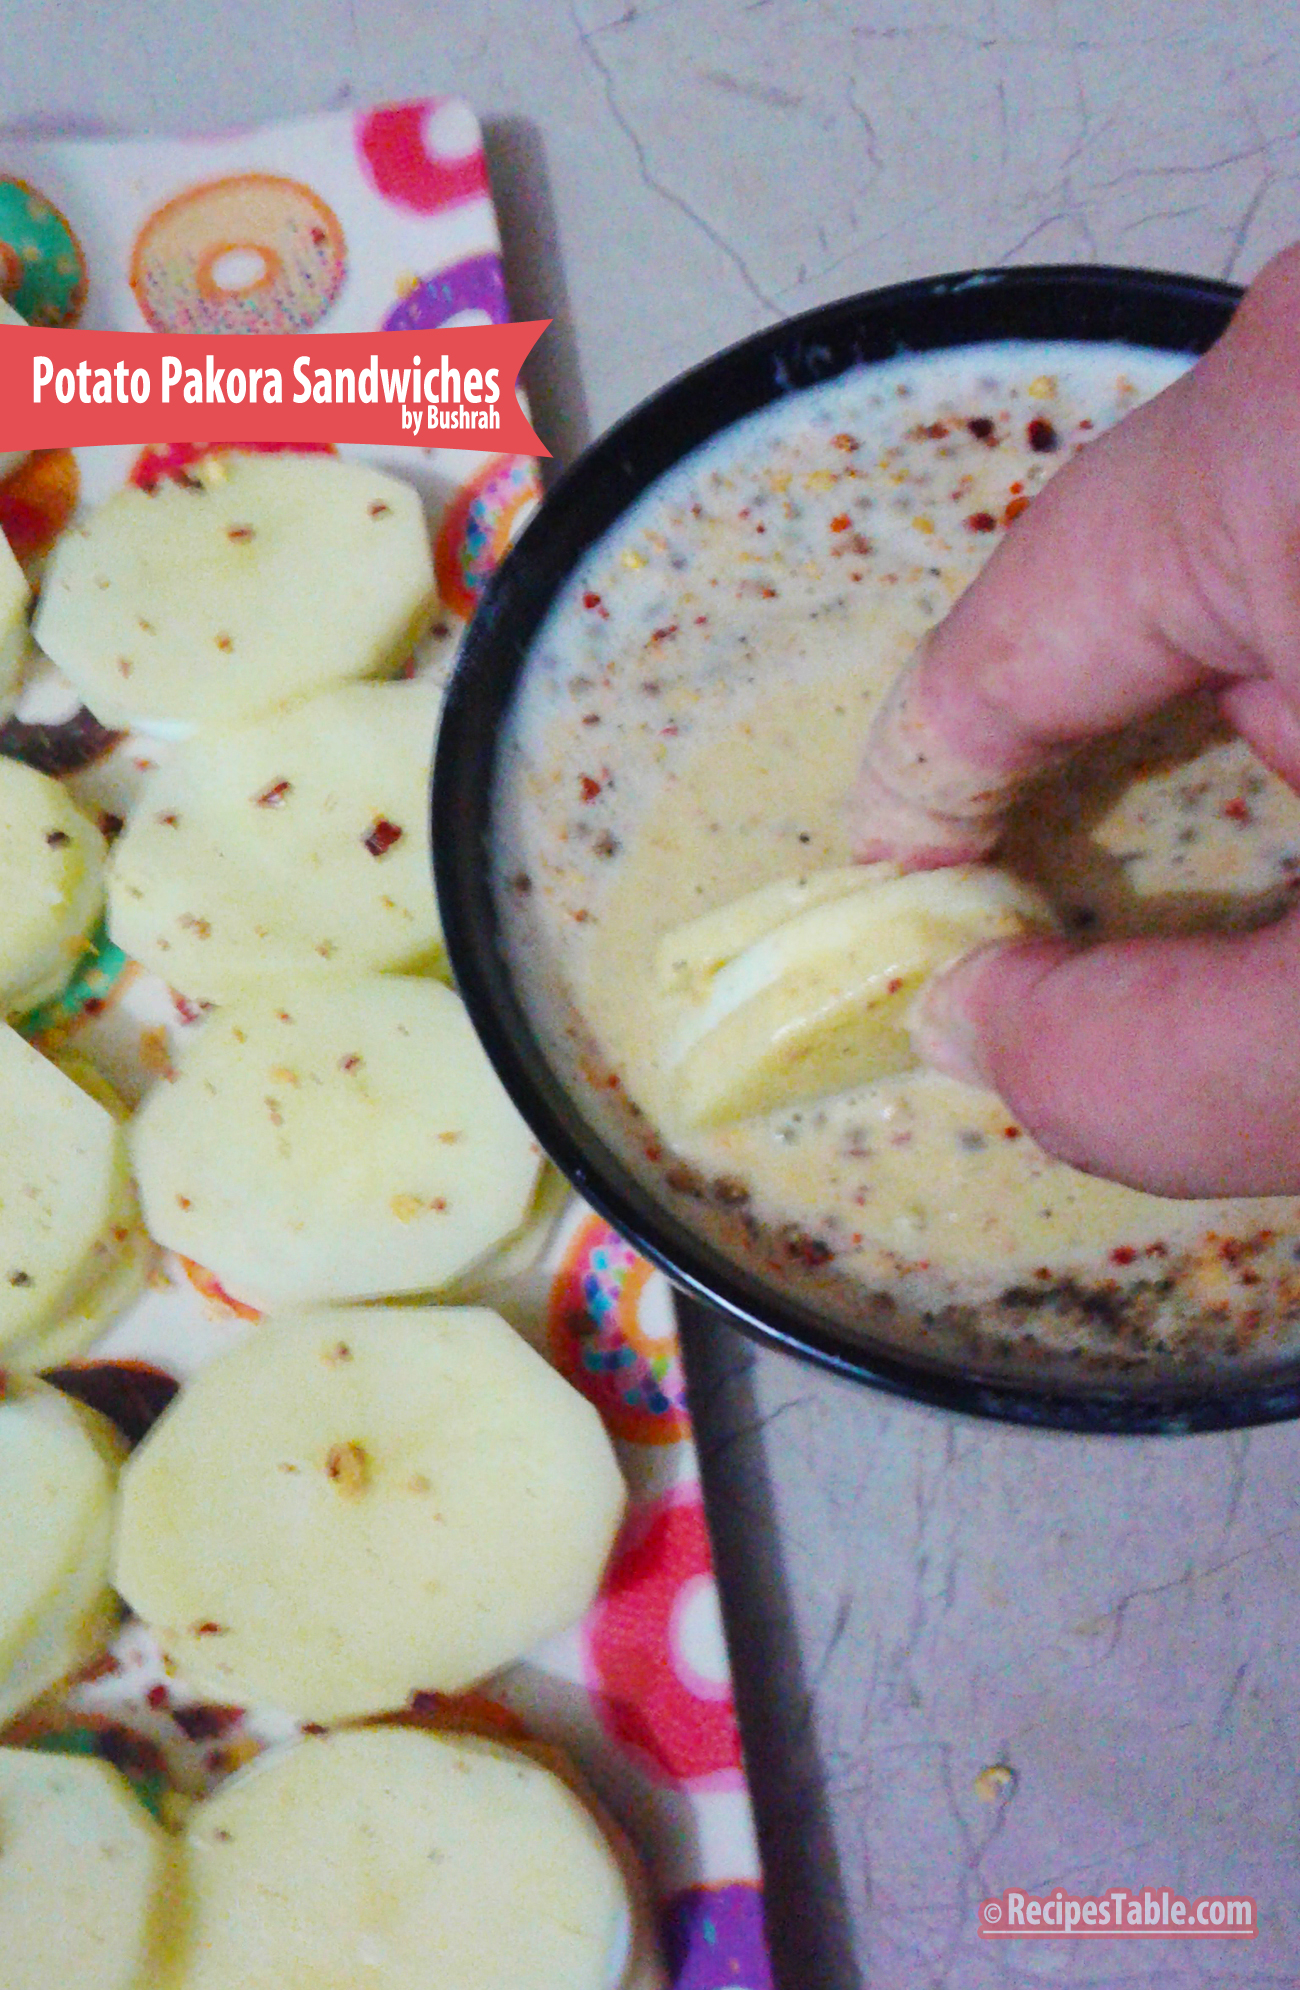 Potato Pakora Sandwiches recipe